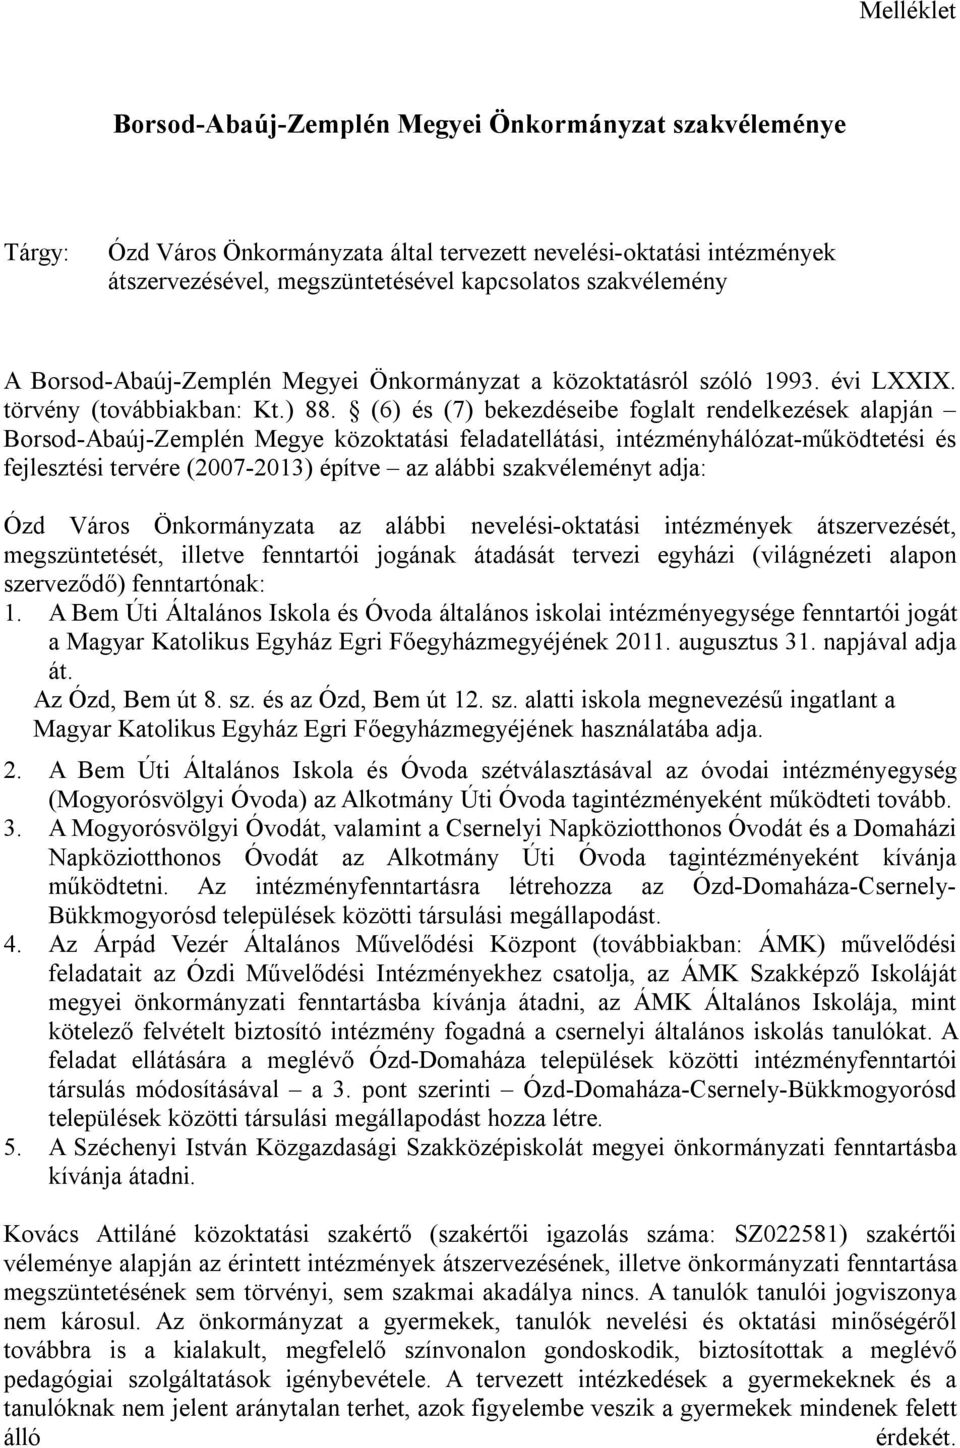 (6) és (7) bekezdéseibe foglalt rendelkezések alapján Borsod-Abaúj-Zemplén Megye közoktatási feladatellátási, intézményhálózat-működtetési és fejlesztési tervére (2007-2013) építve az alábbi